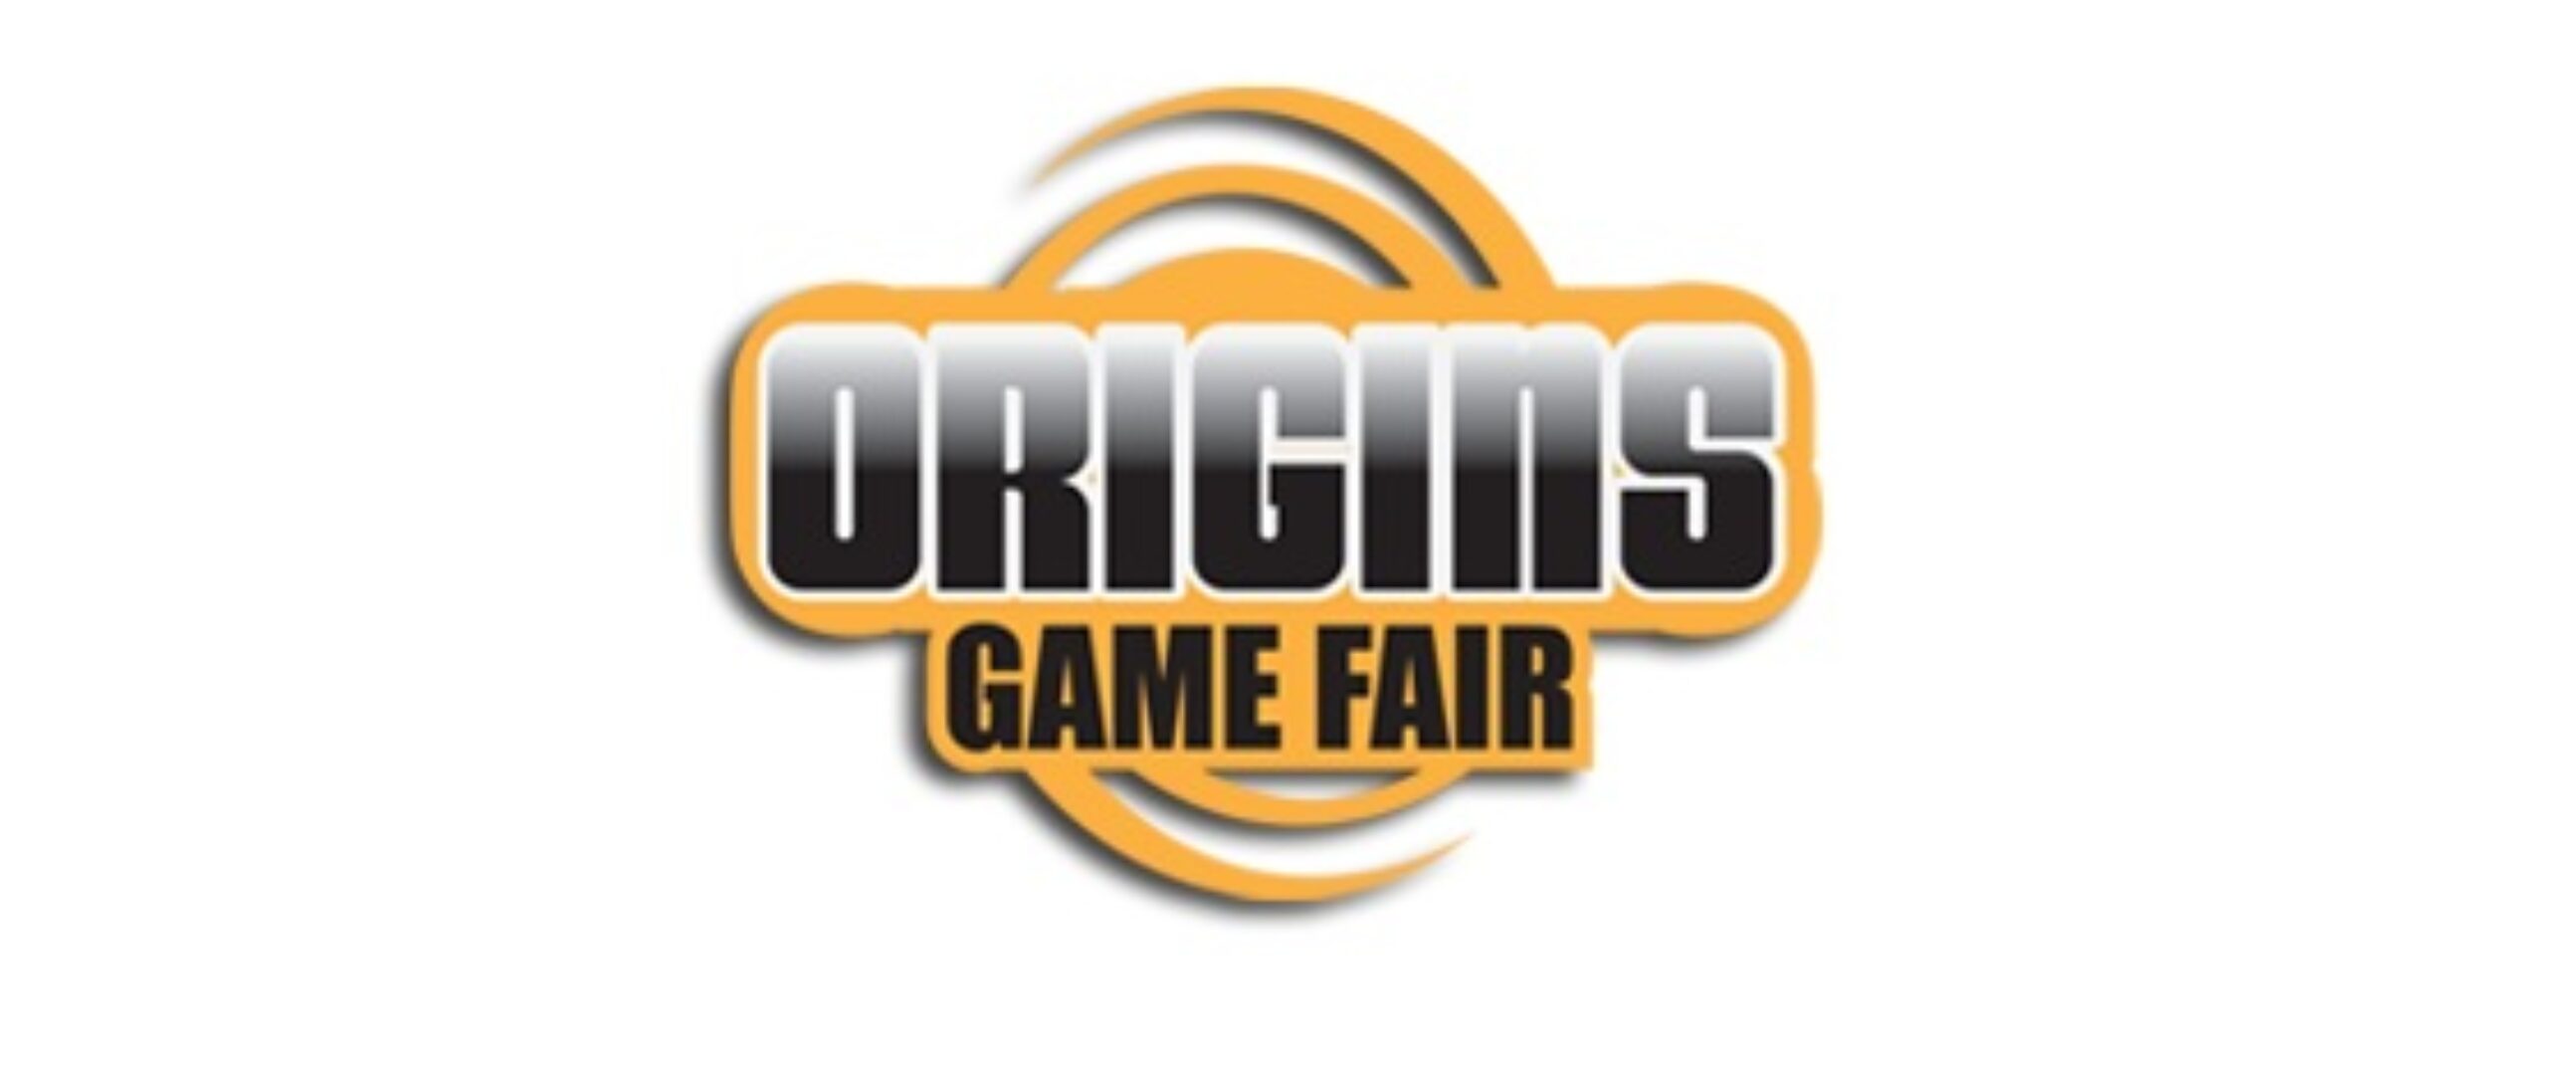 Origins 2015 Impressions